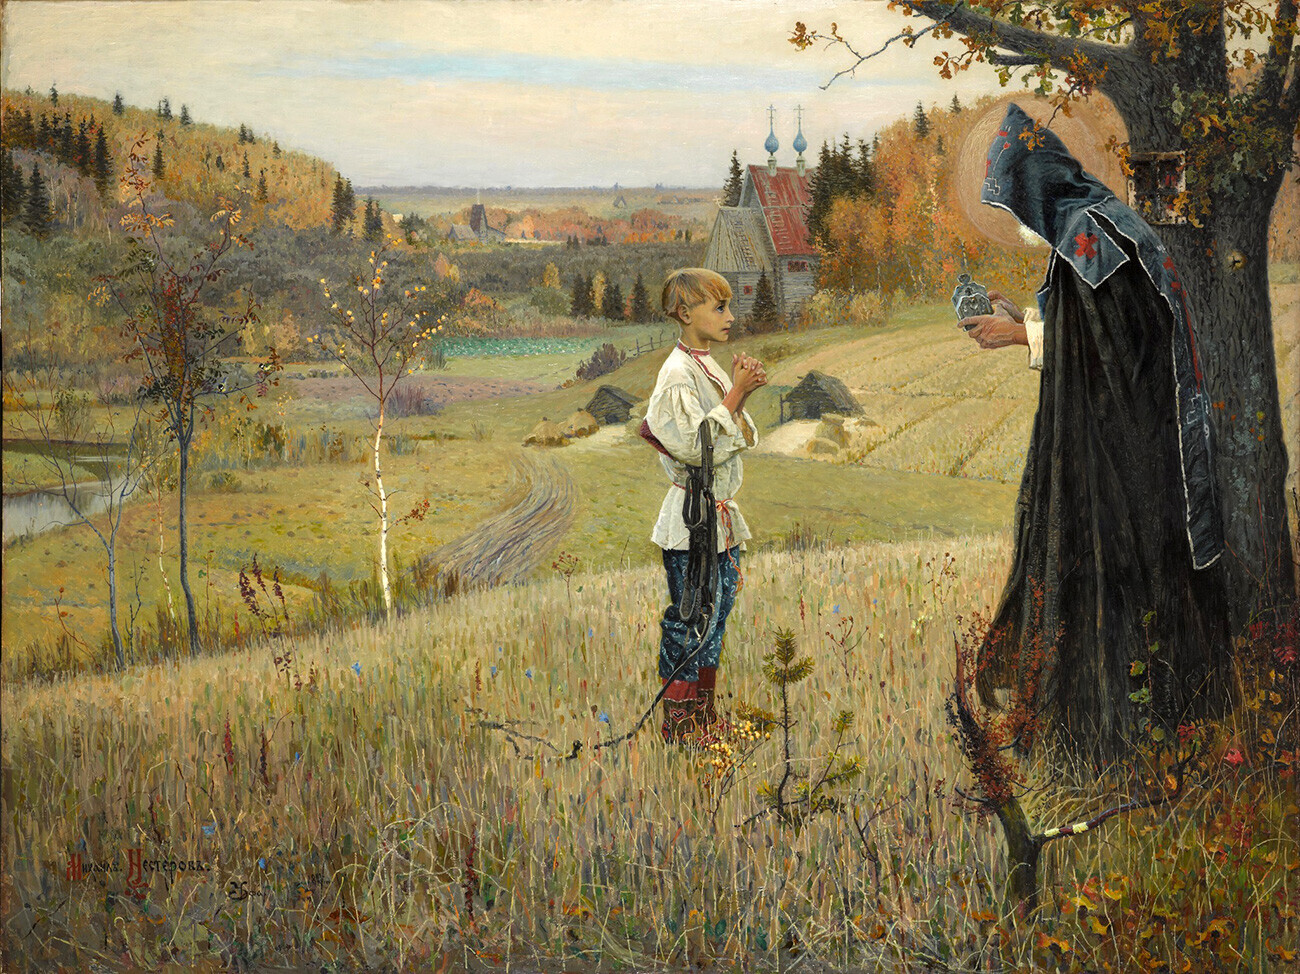 “Visão do jovem Bartolomeu”, 1890.
